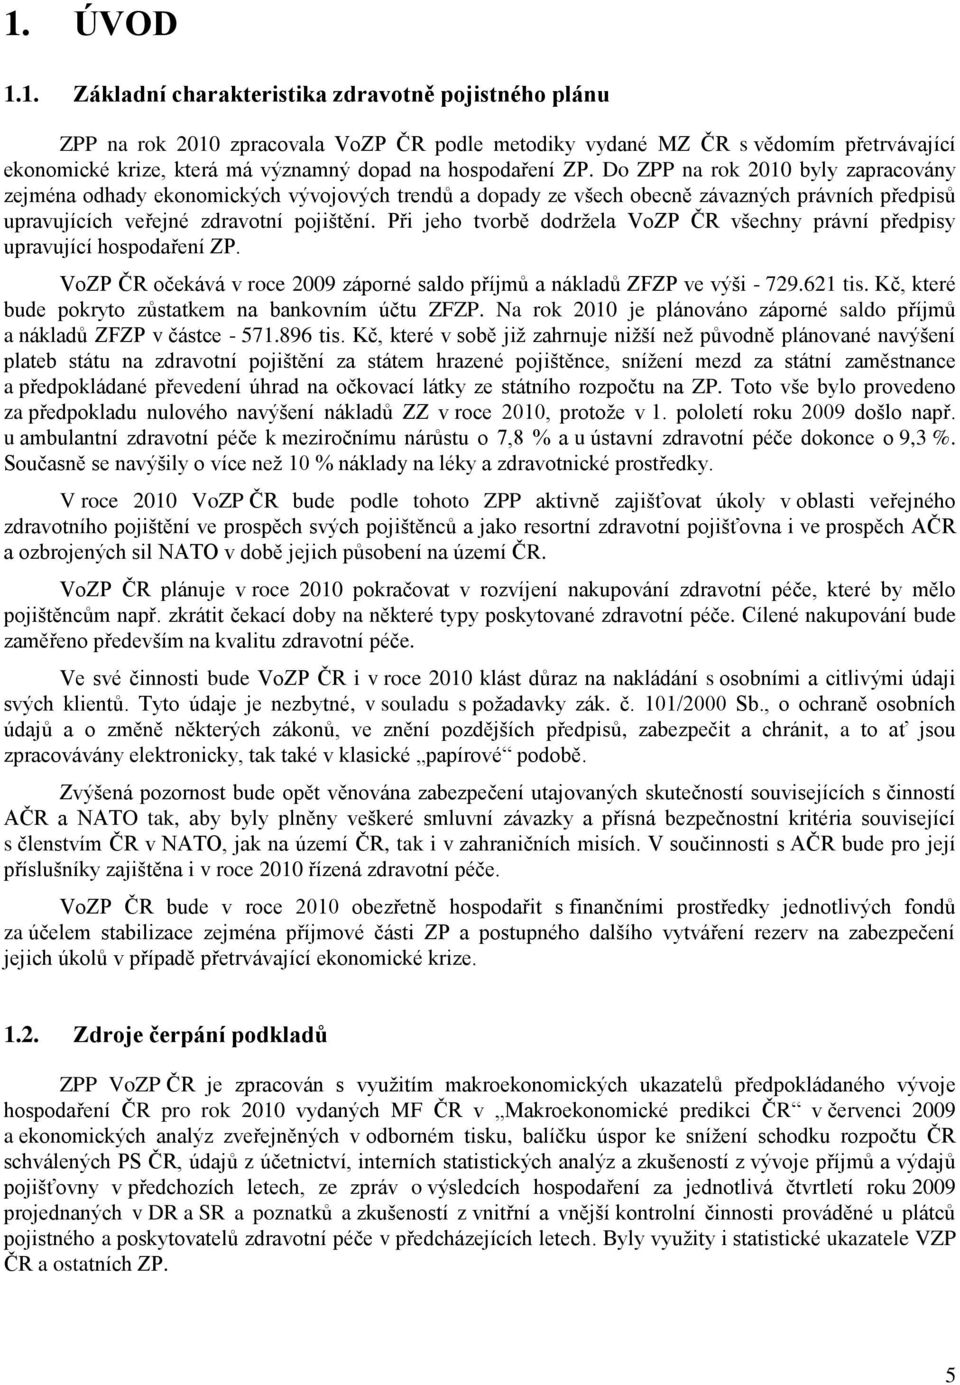 Při jeho tvorbě dodržela VoZP ČR všechny právní předpisy upravující hospodaření ZP. VoZP ČR očekává v roce záporné saldo příjmů a nákladů ZFZP ve výši - 729.621 tis.